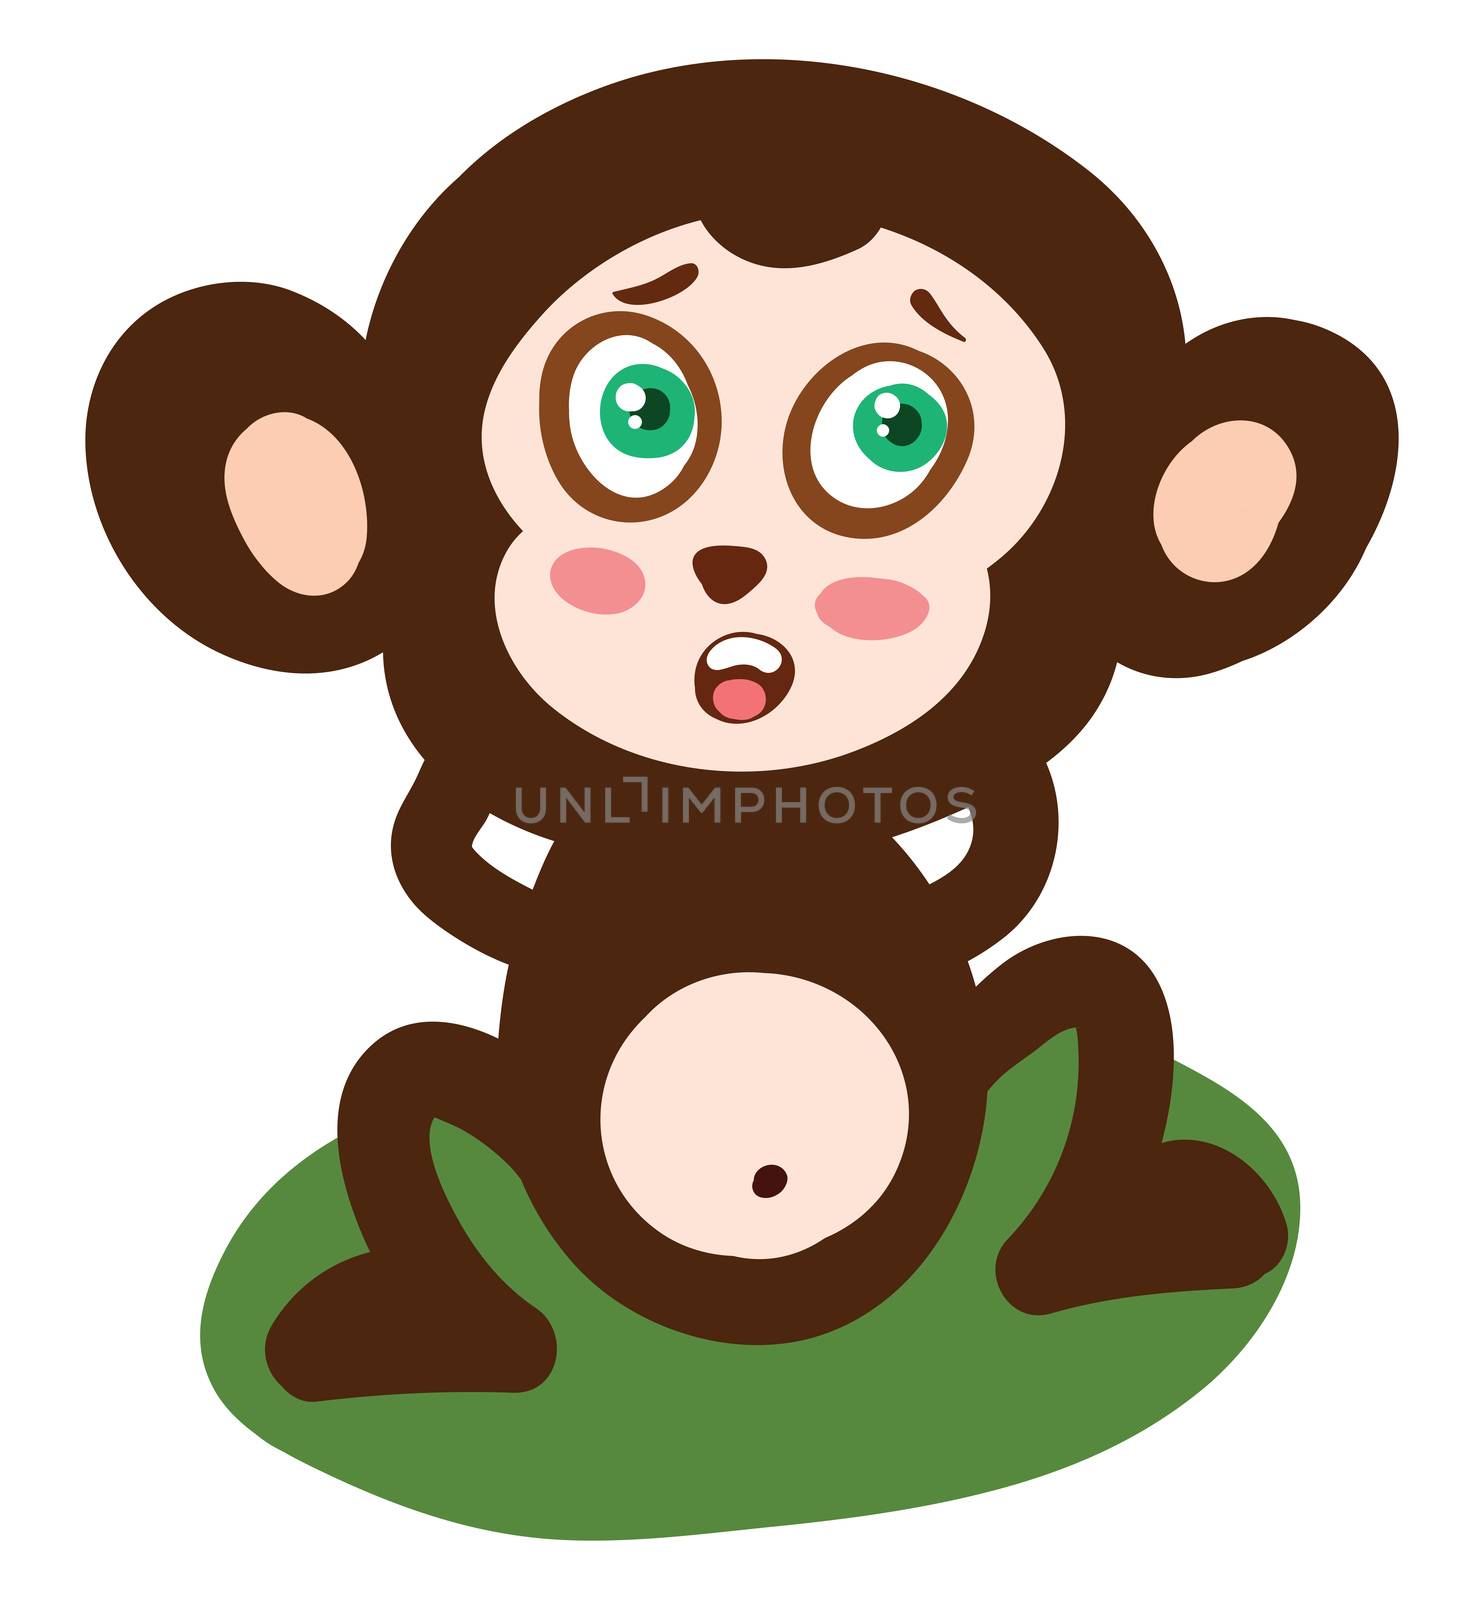 Scared little monkey , illustration, vector on white background by Morphart